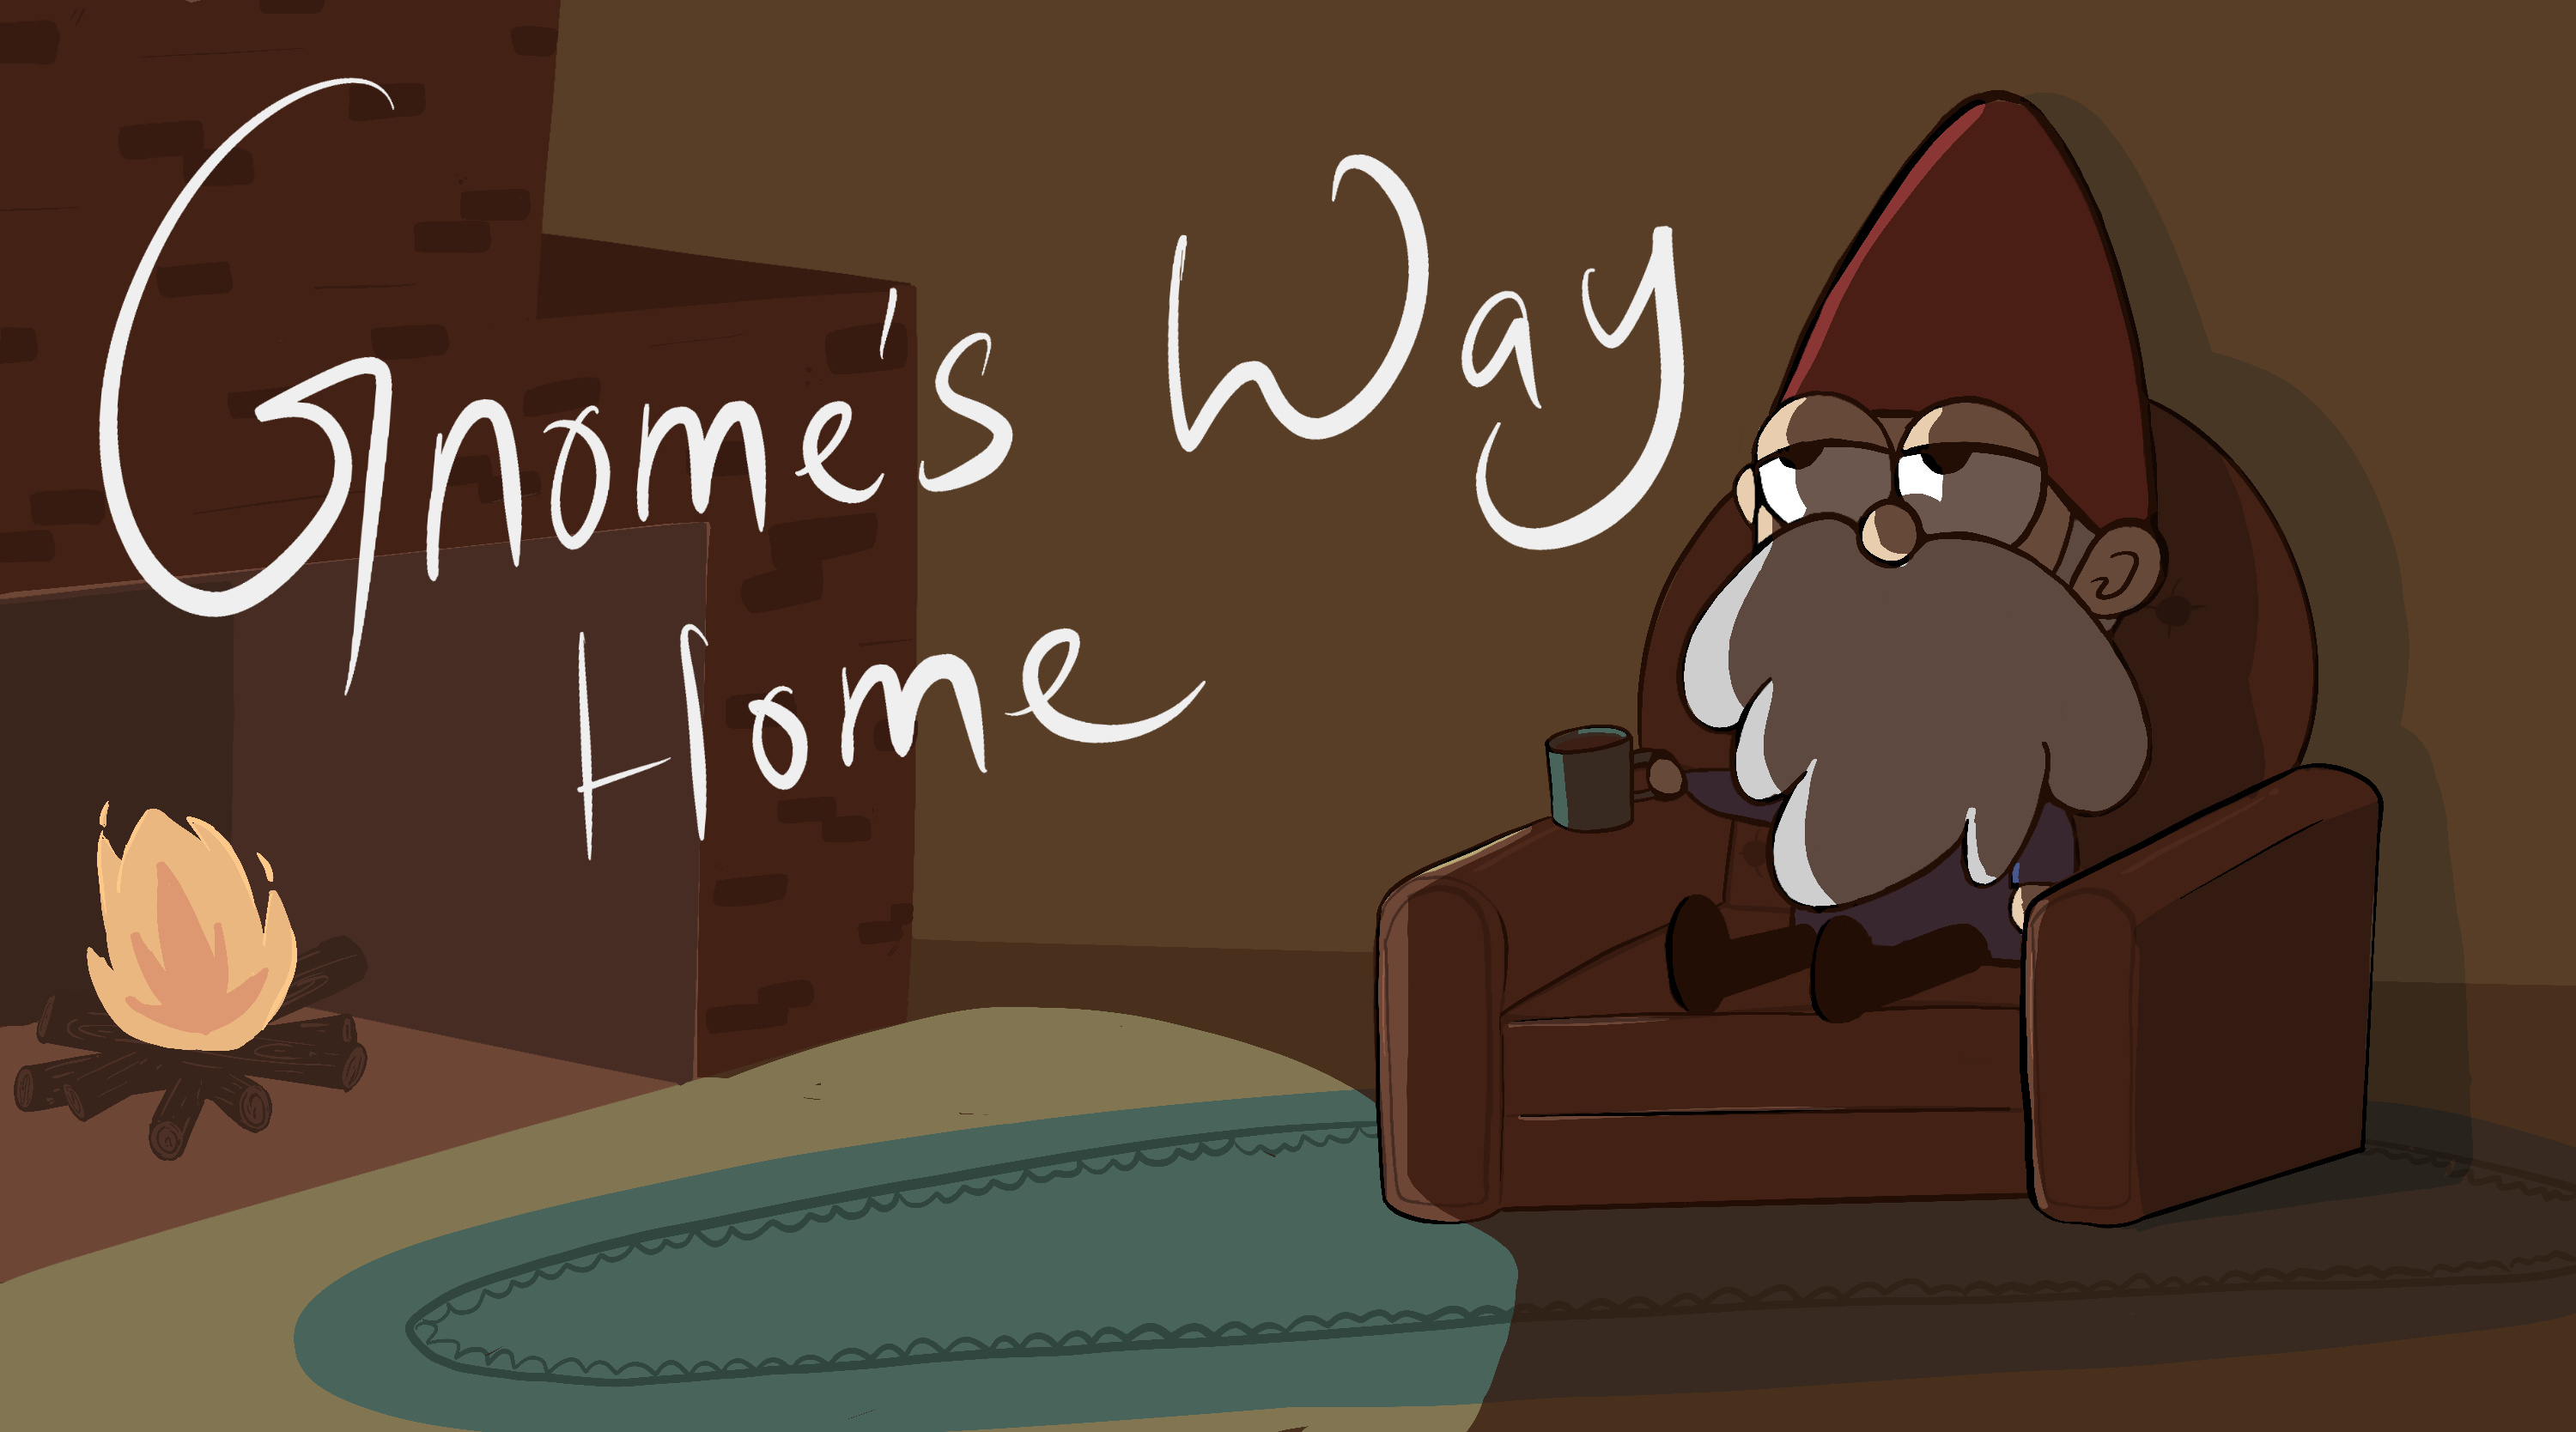 Gnome's Way Home v.3